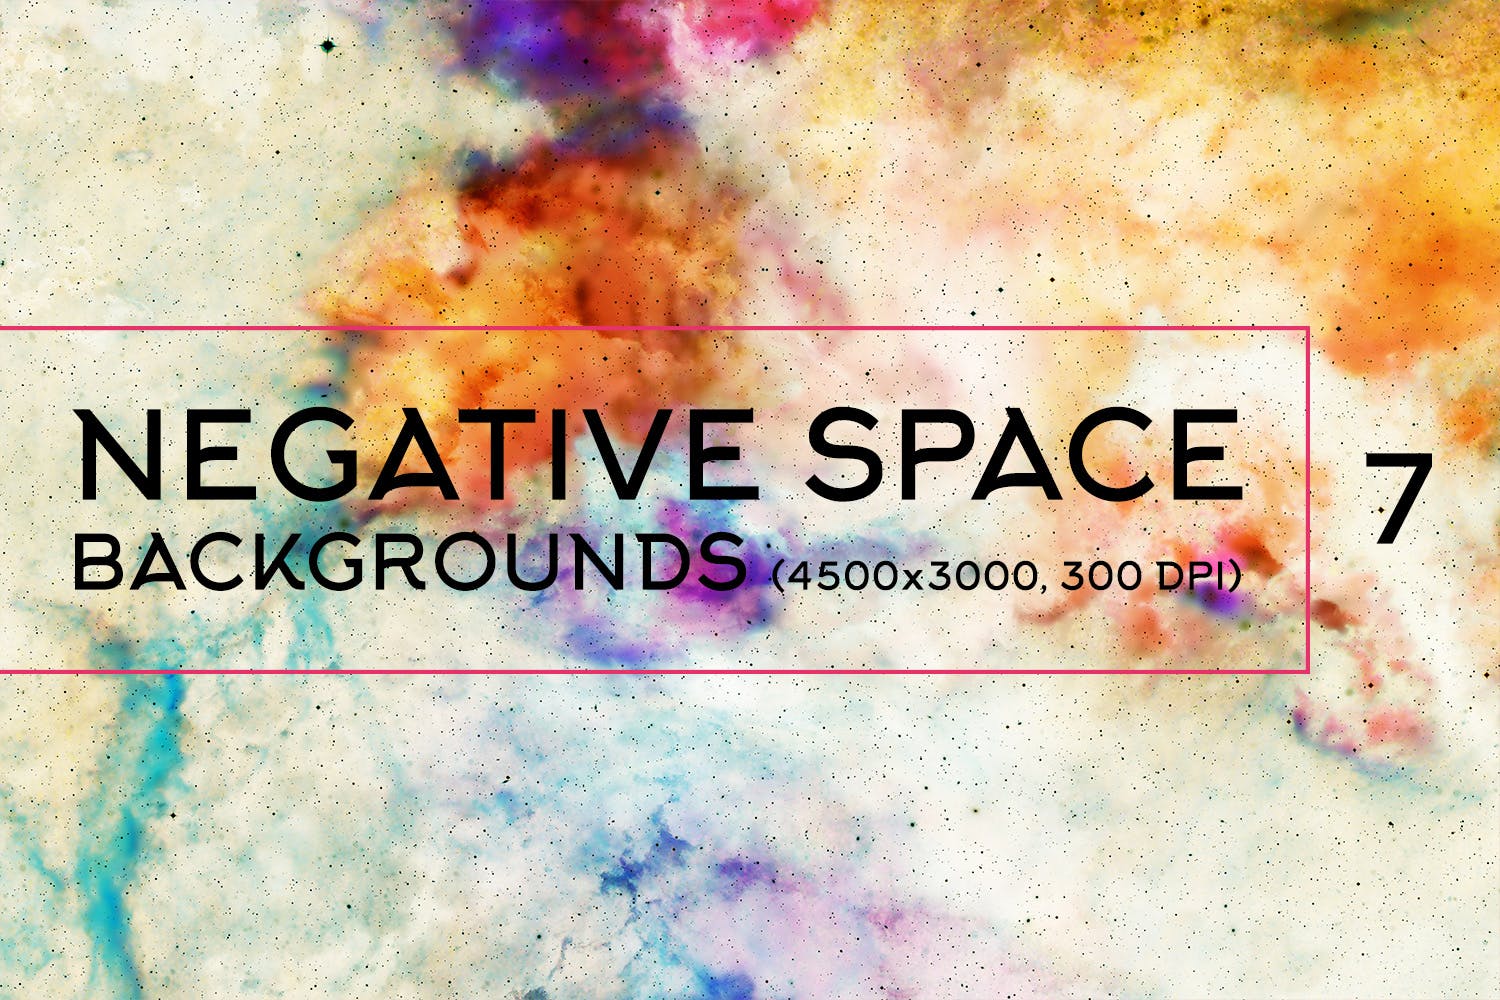 负空间水彩肌理纹理背景素材包v7 Negative Space Backgrounds Vol.7插图